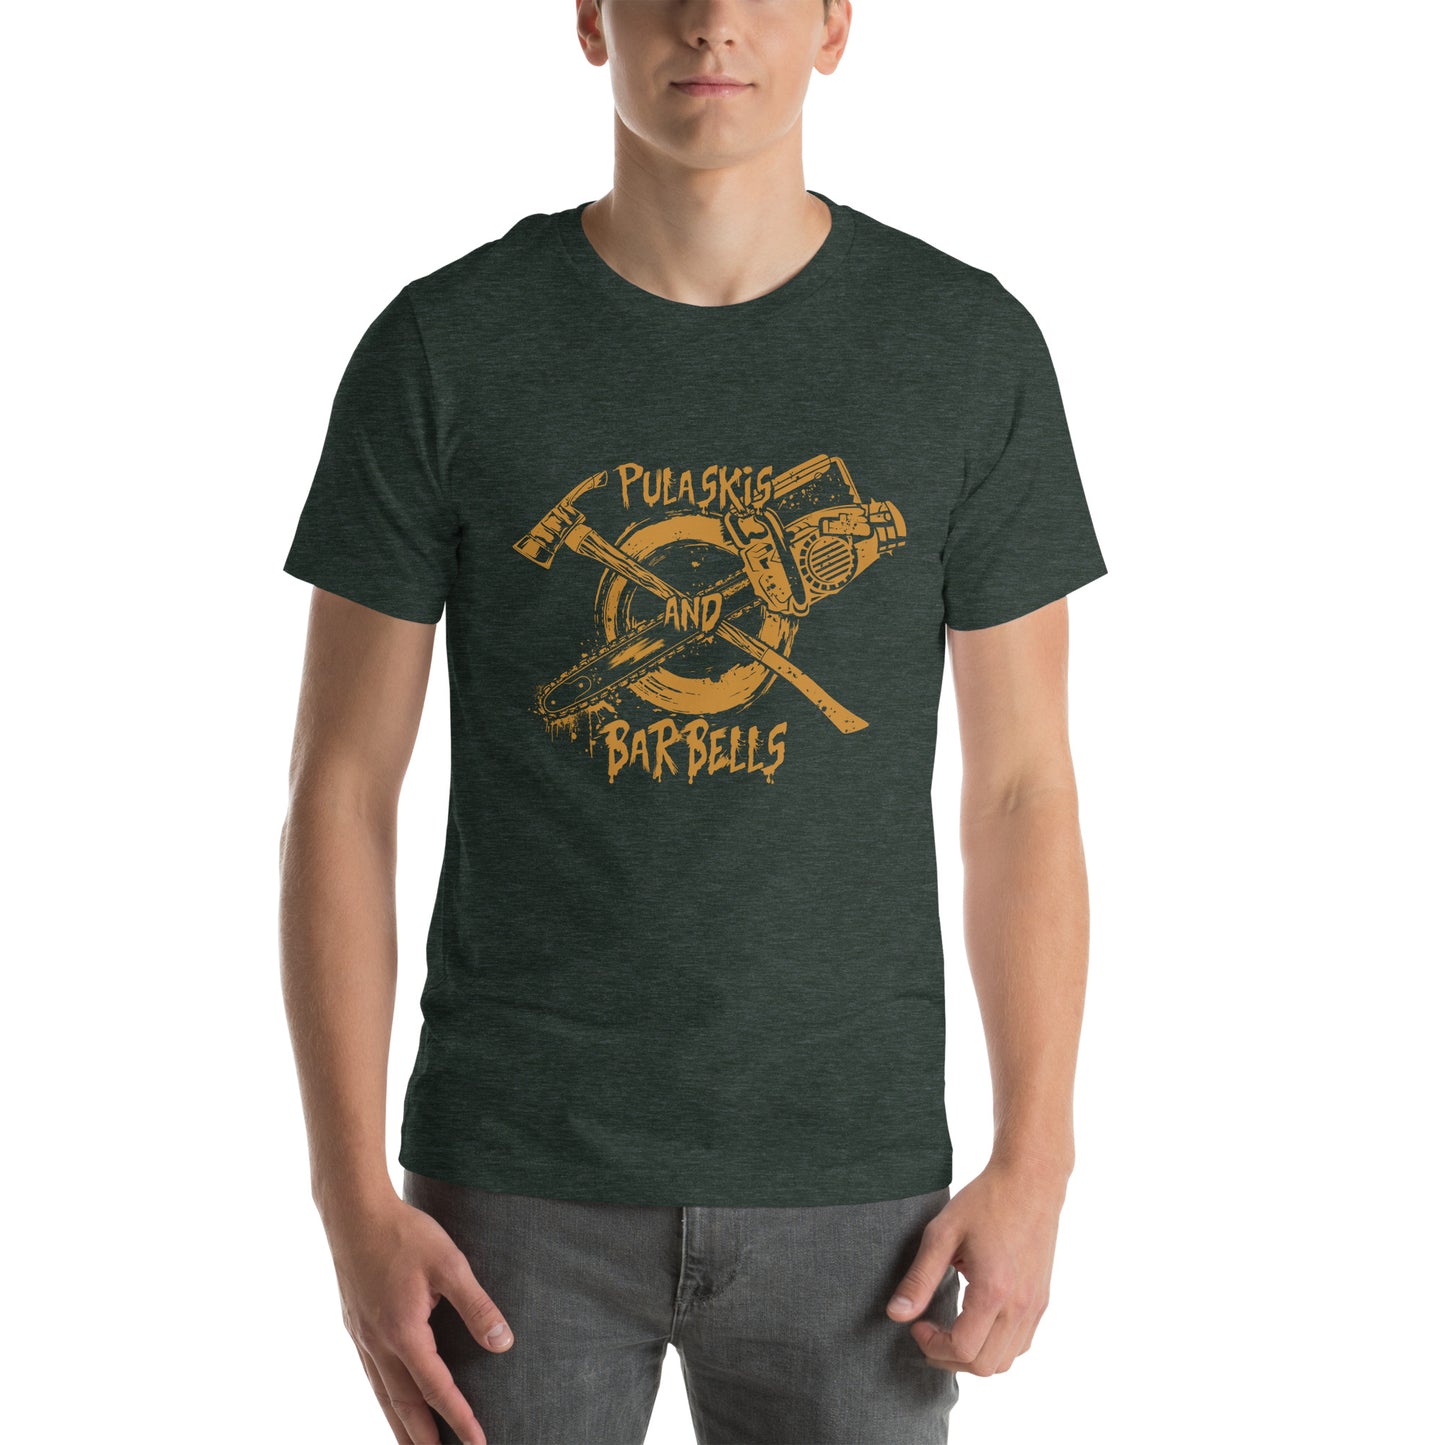 Pulaski & Chainsaw t-shirt